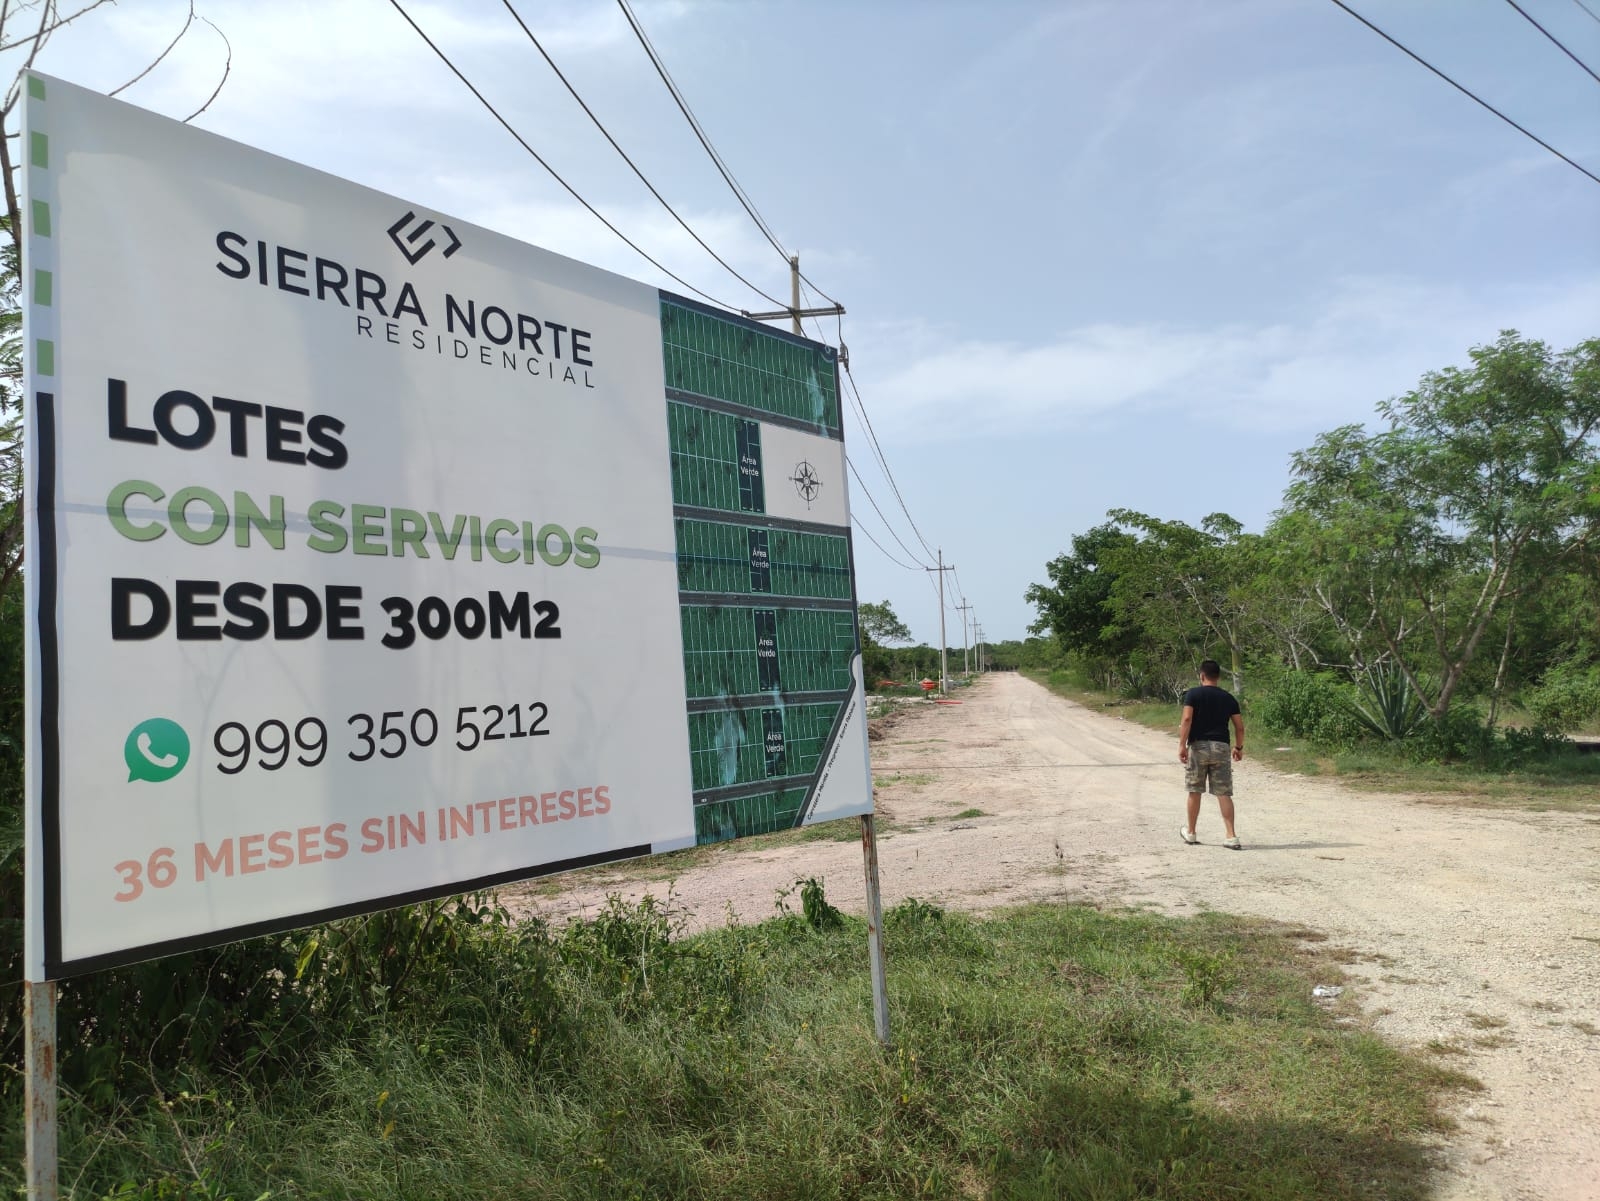 Loteros en Yucatán: Así operaron funcionarios y empresarios para quedarse con tierras ejidales